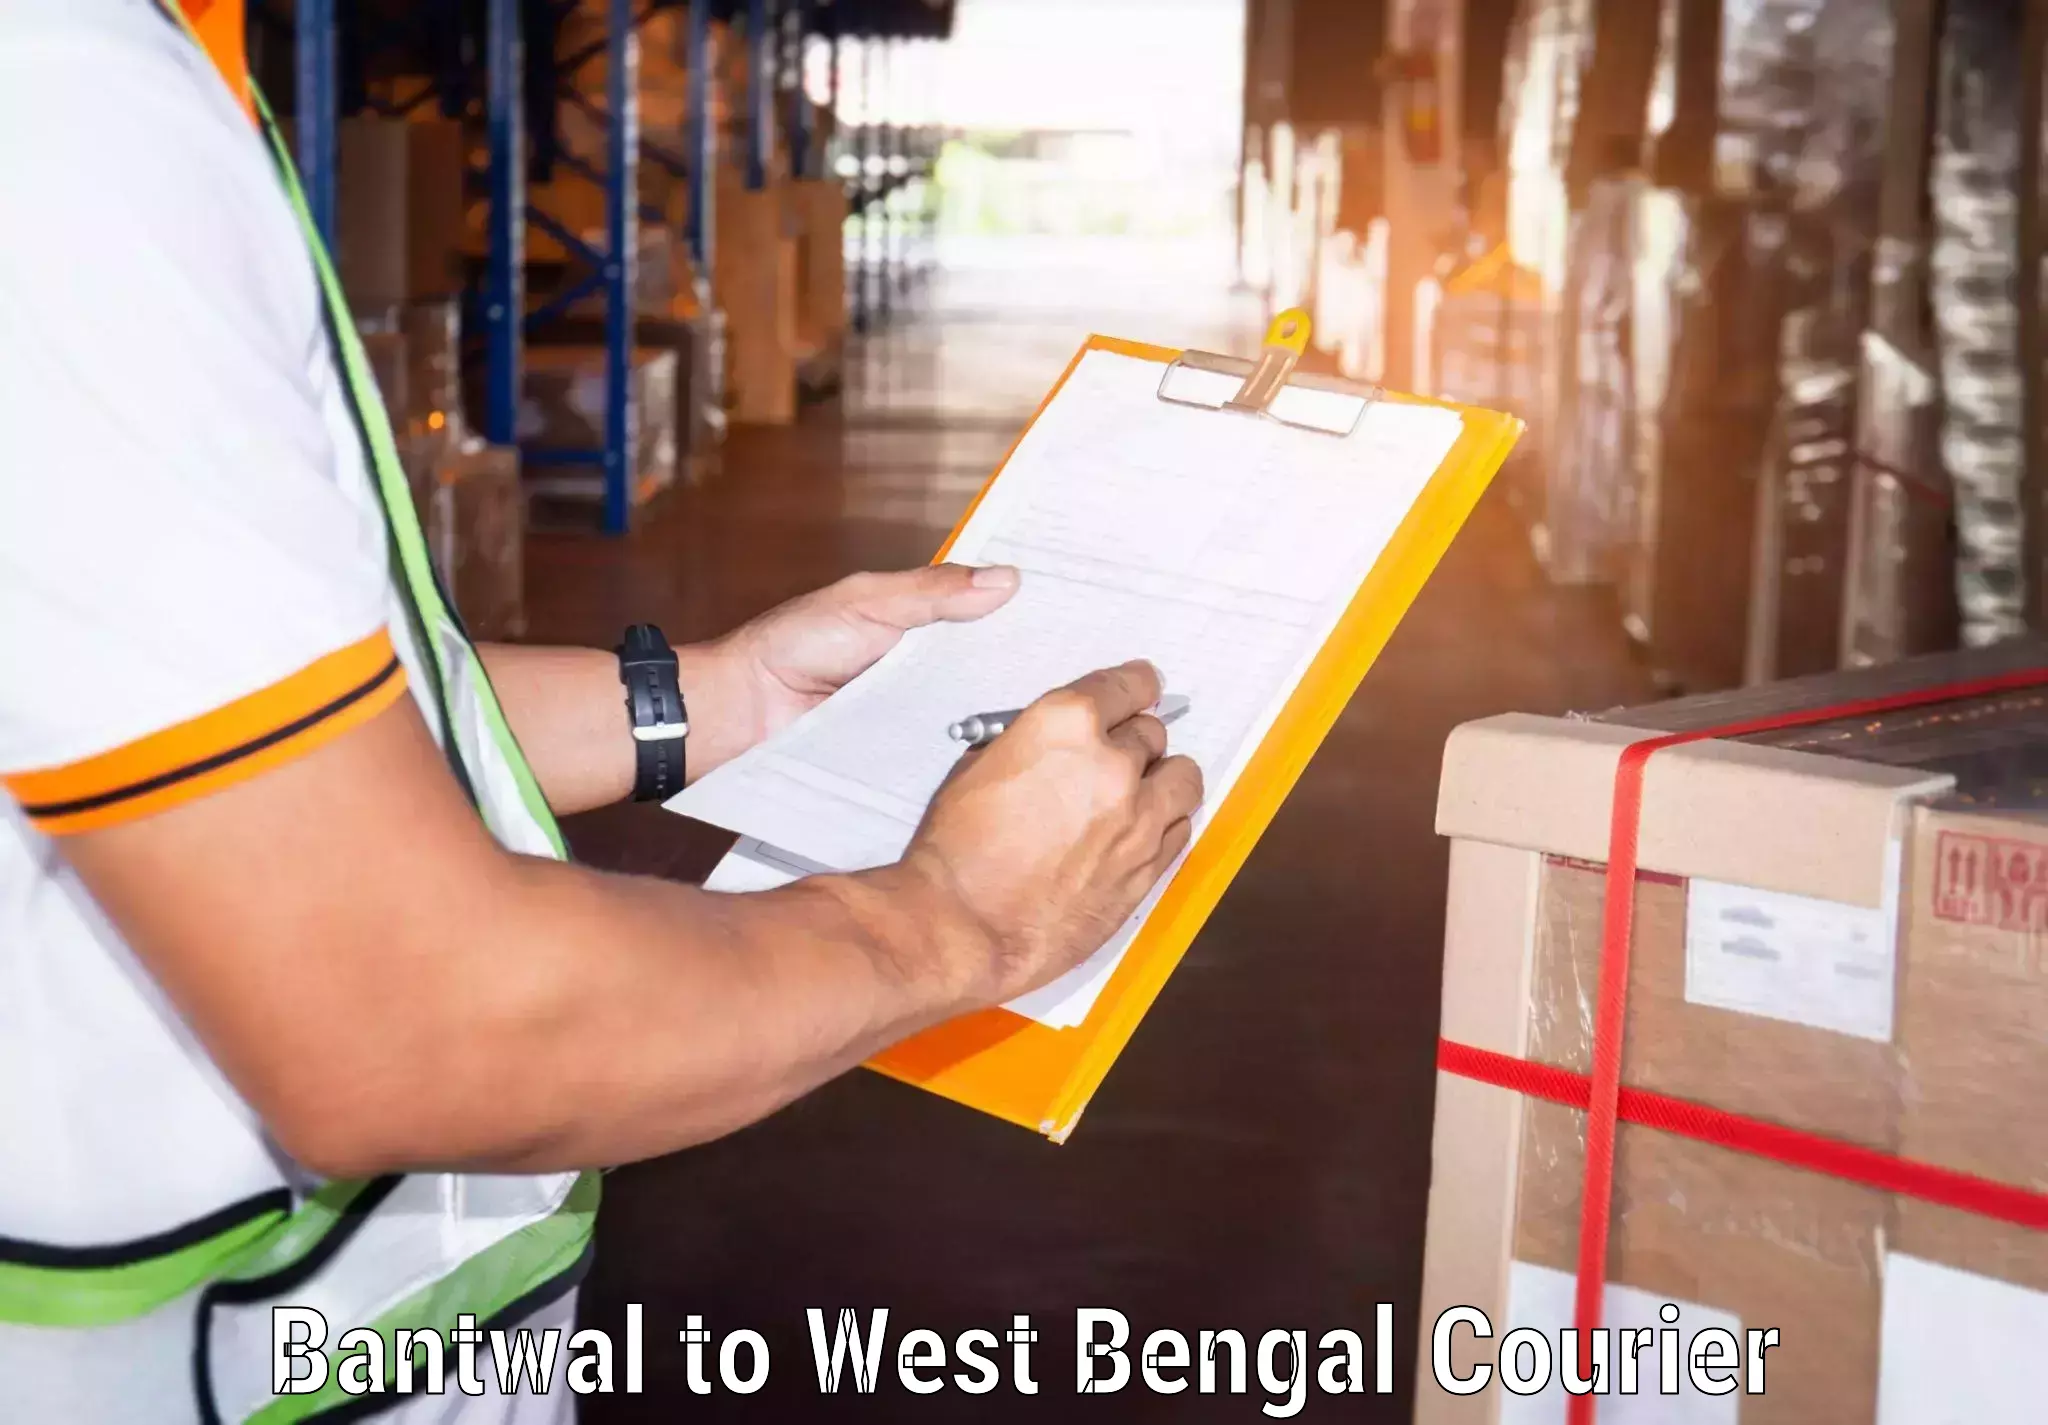 Professional courier handling Bantwal to Maheshtala